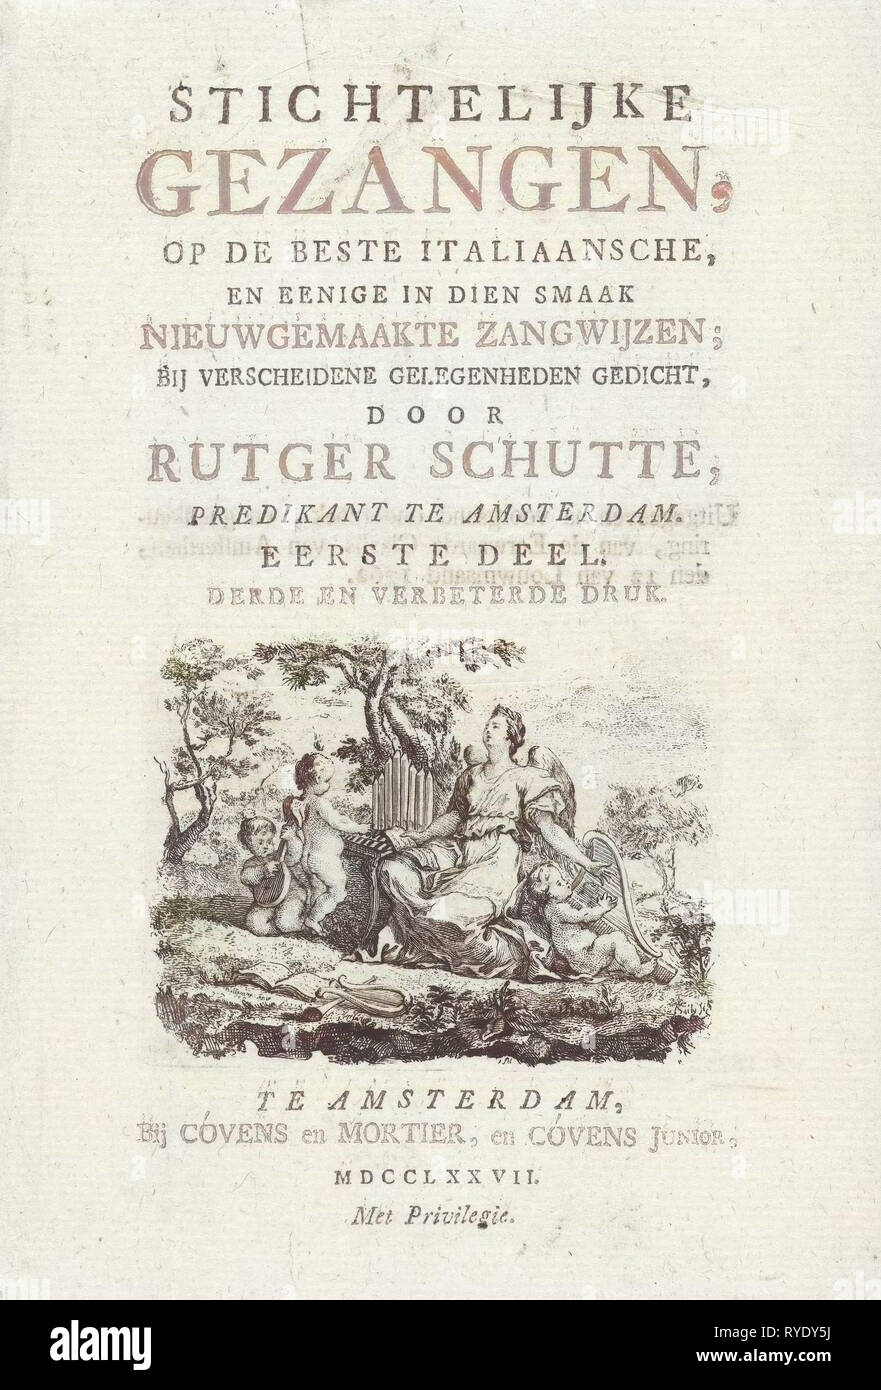 Titel der Seite: R. Schutte, andächtige Lieder, Amsterdam, Niederlande, 1777, Johannes Covens und Cornelis Mortier, Johannes Covens (jr.), 1777 Stockfoto